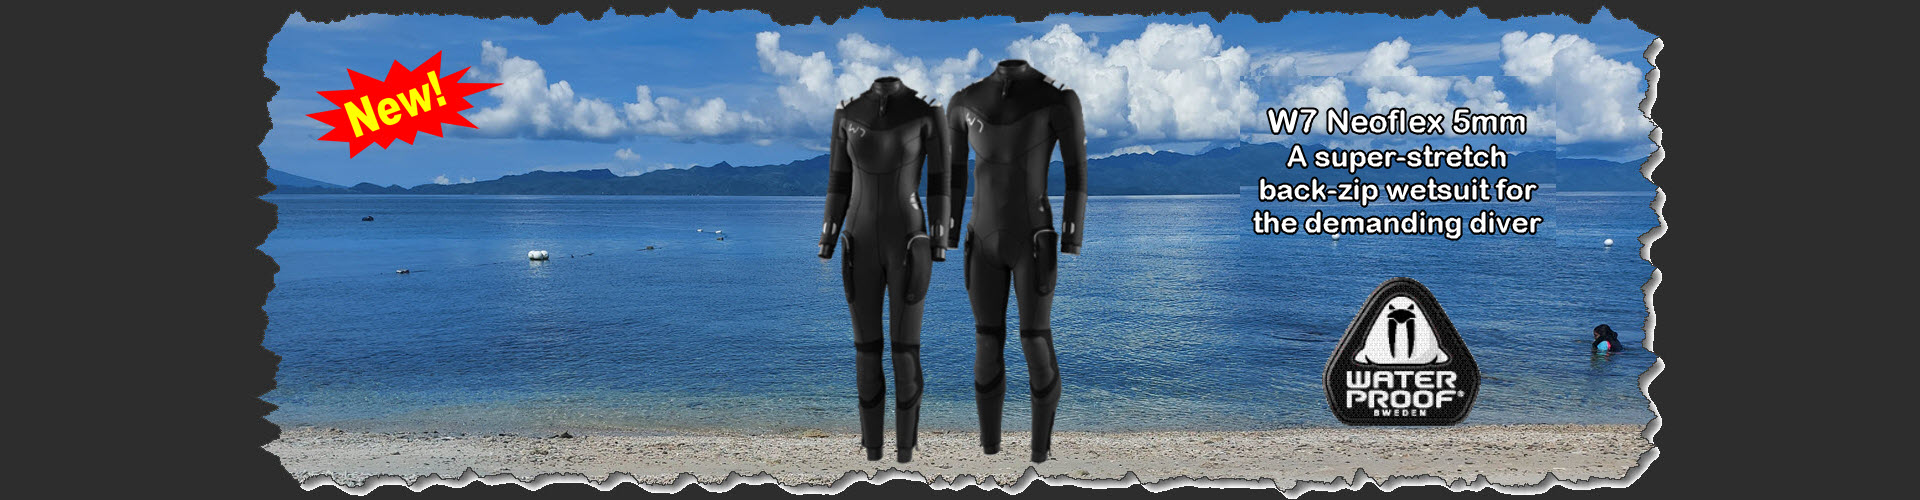 W7 Waterproof 5mm wetsuit